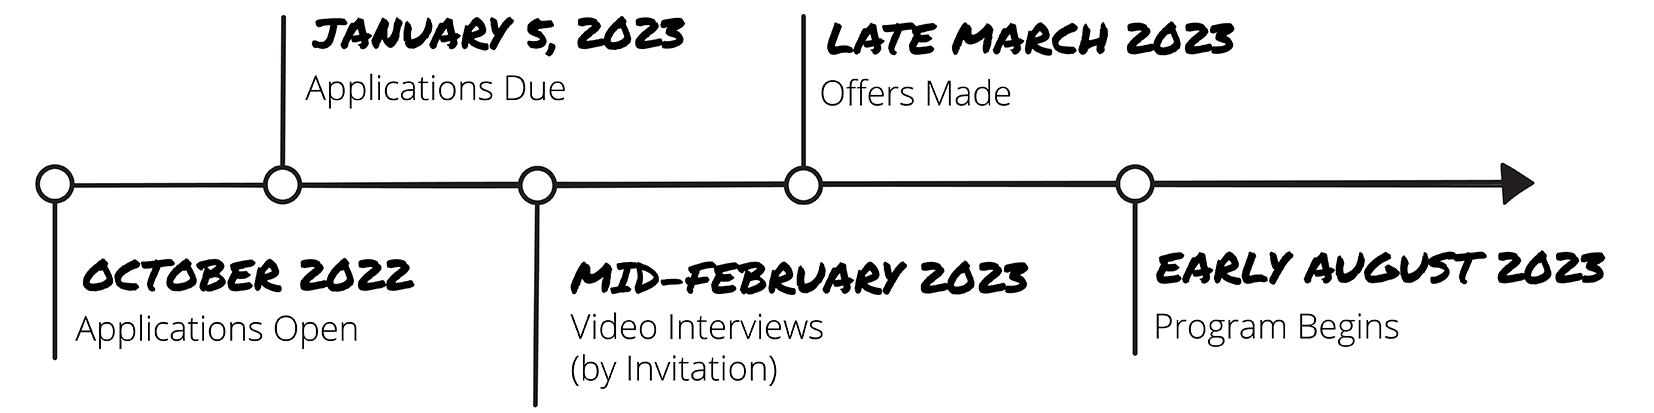 Timeline for applying to Gensler’s Design Strategist Development Program 2022-2023.